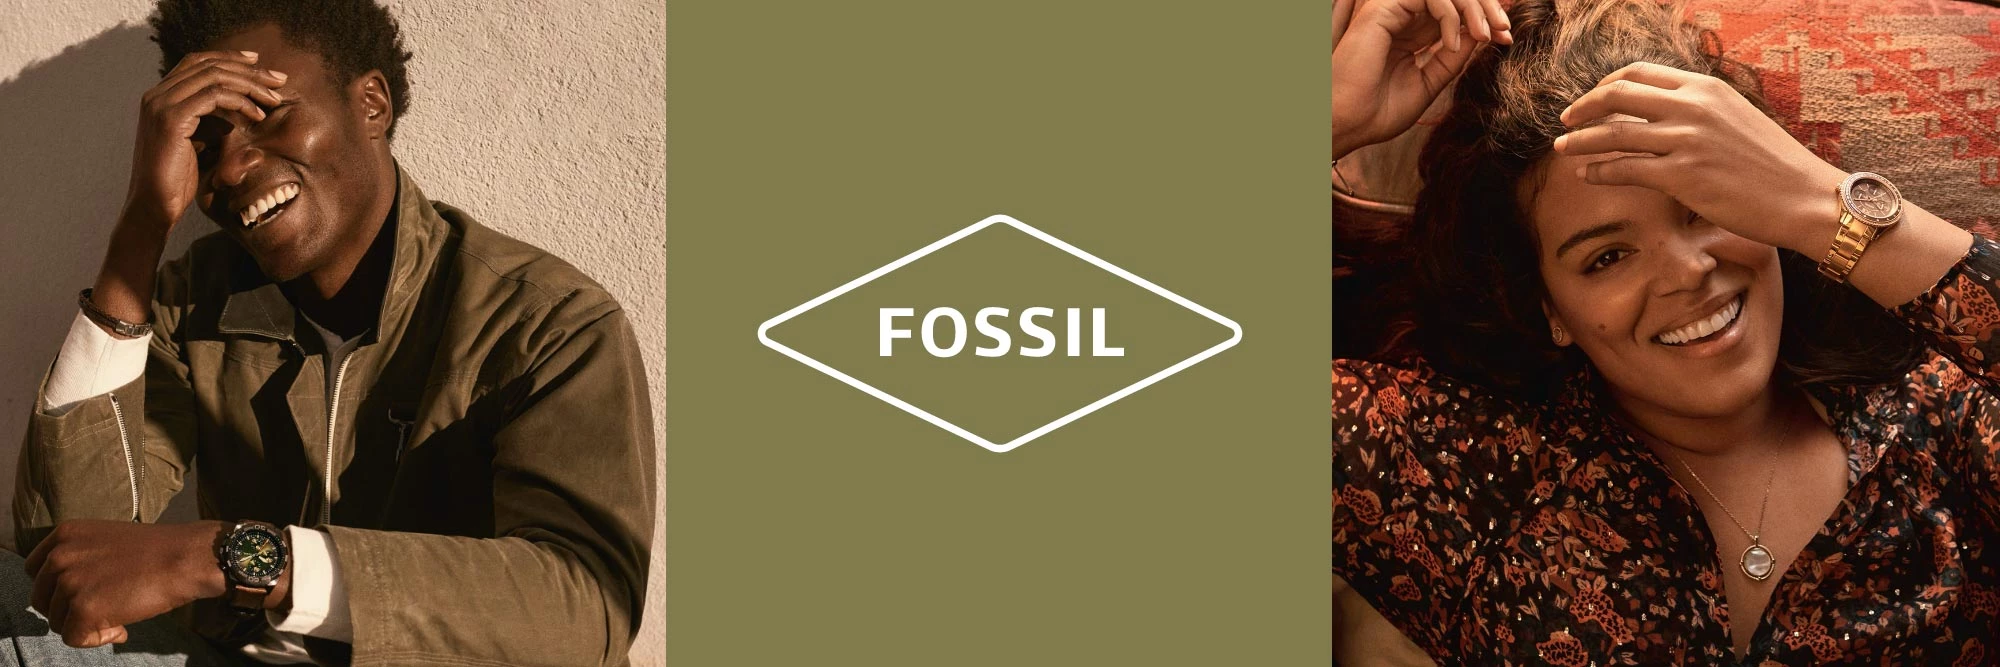 banniere-fossil